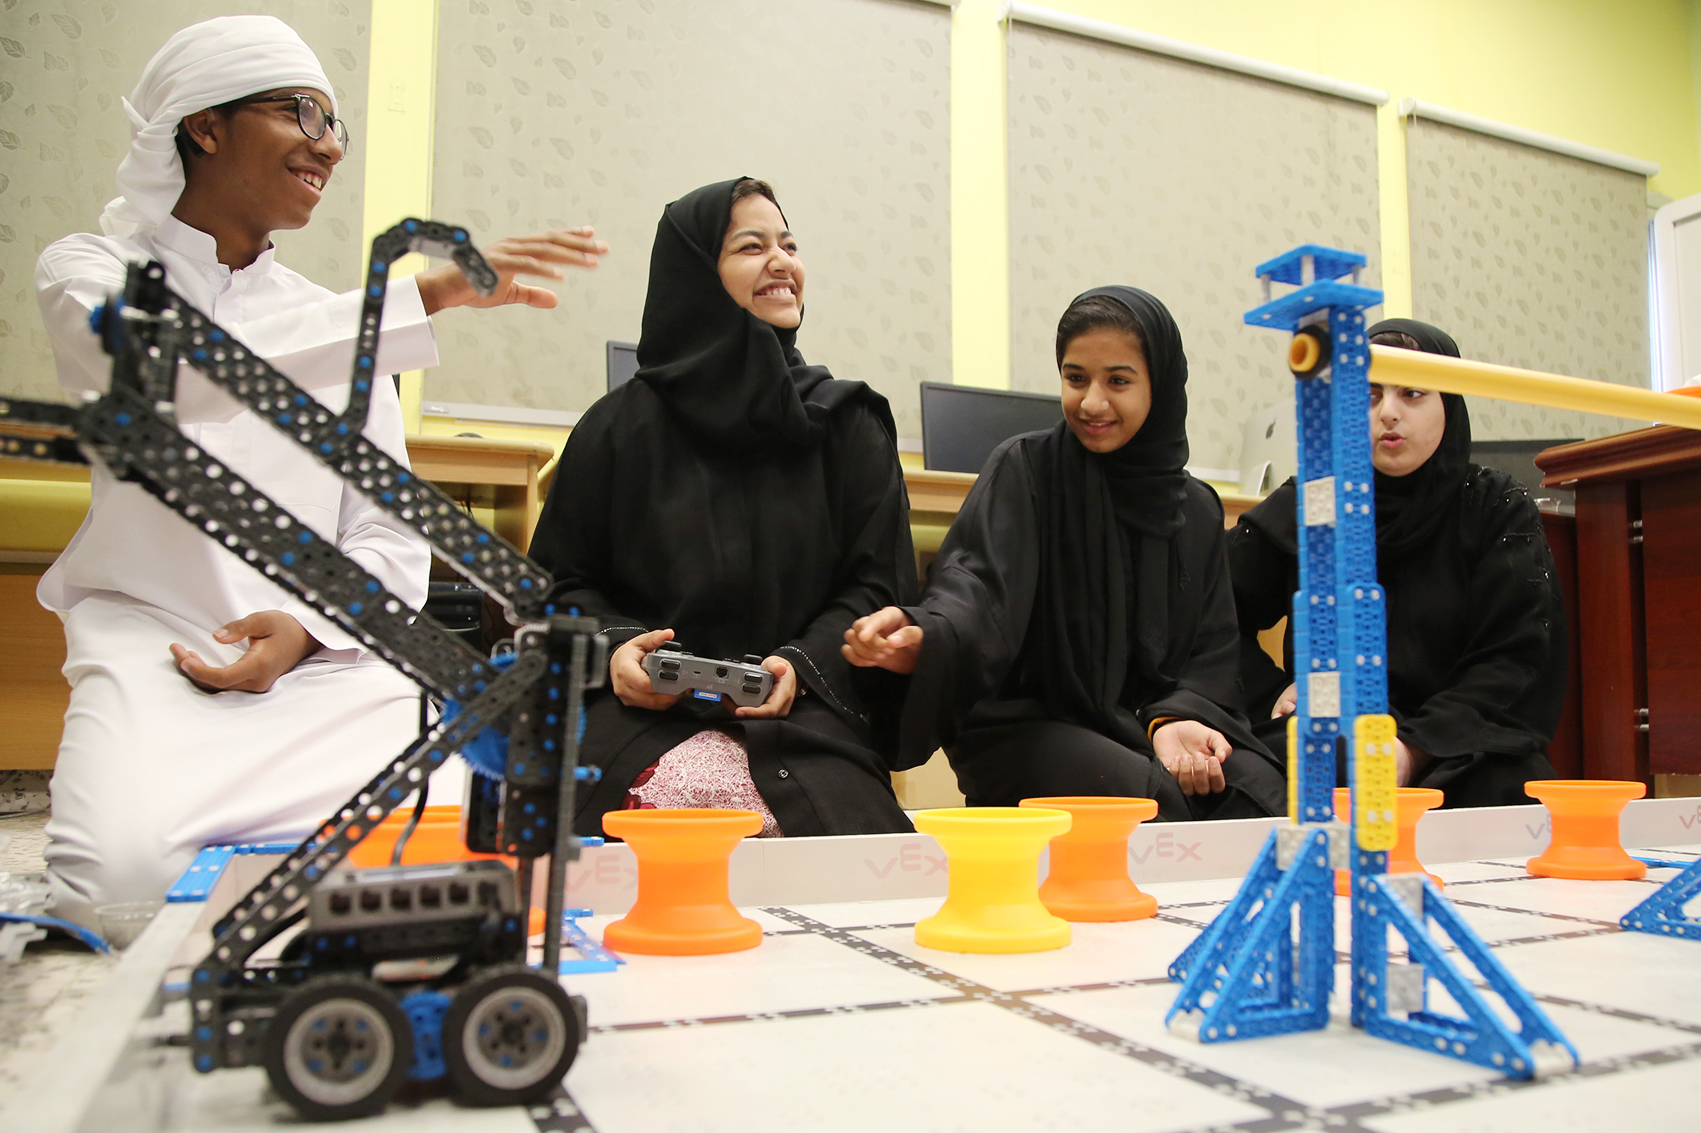 طلاب مدرسة الأمل للصم يصممون روبوت (الفيكس آي كيو)  ... ويشاركون في شهر الإمارات للابتكار